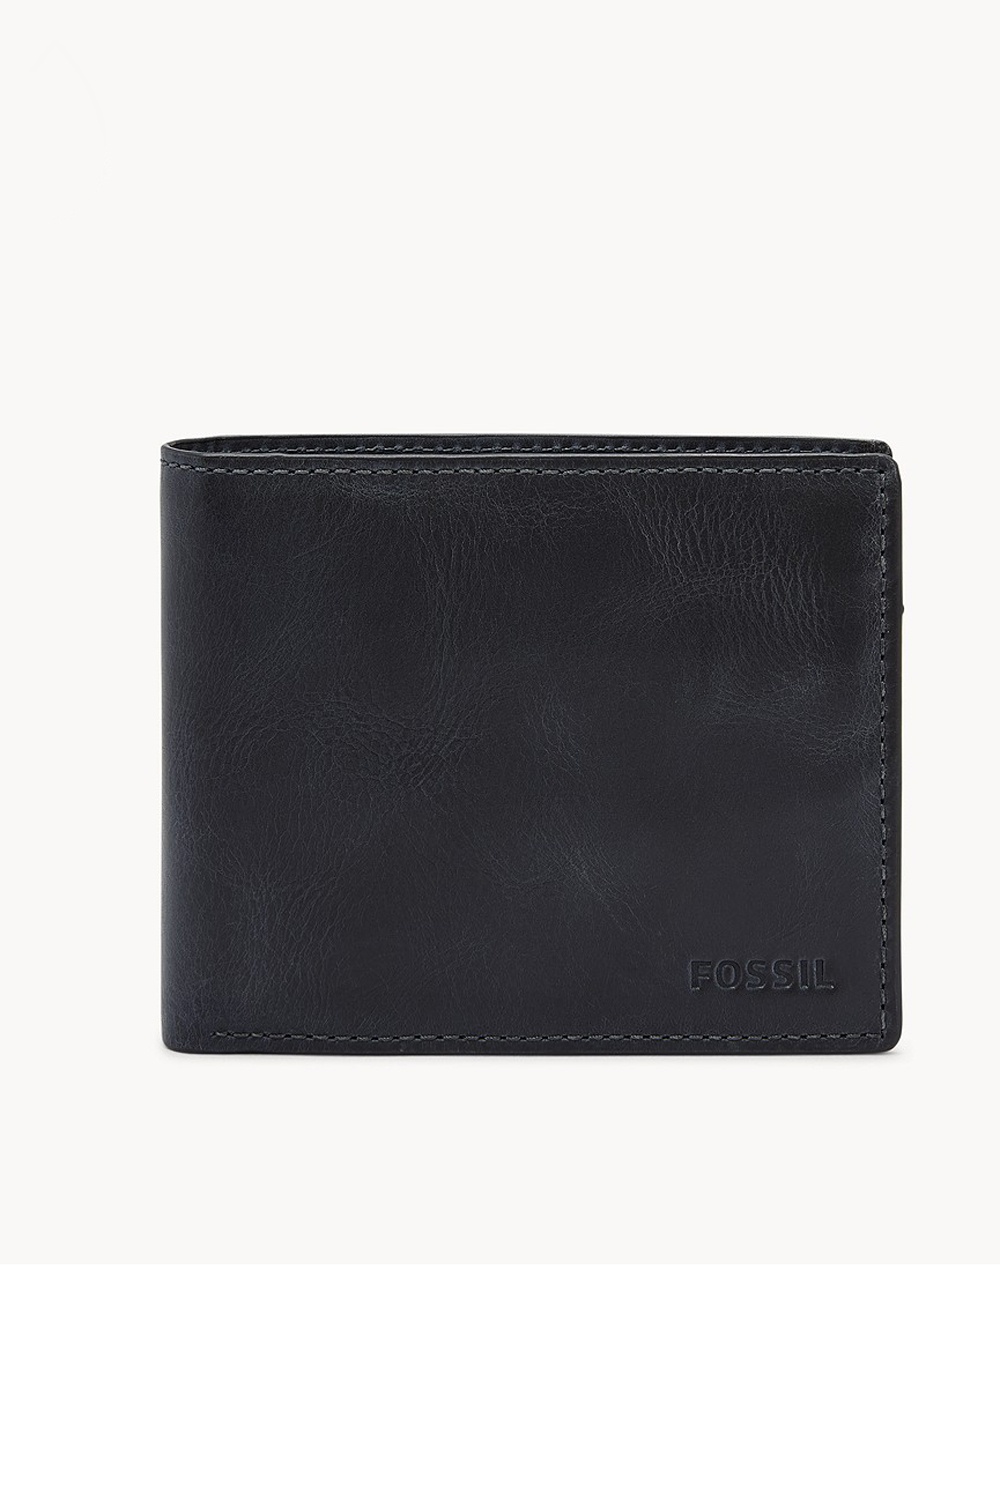 Fossil Derrick Men's Leather Wallet | Odel.lk